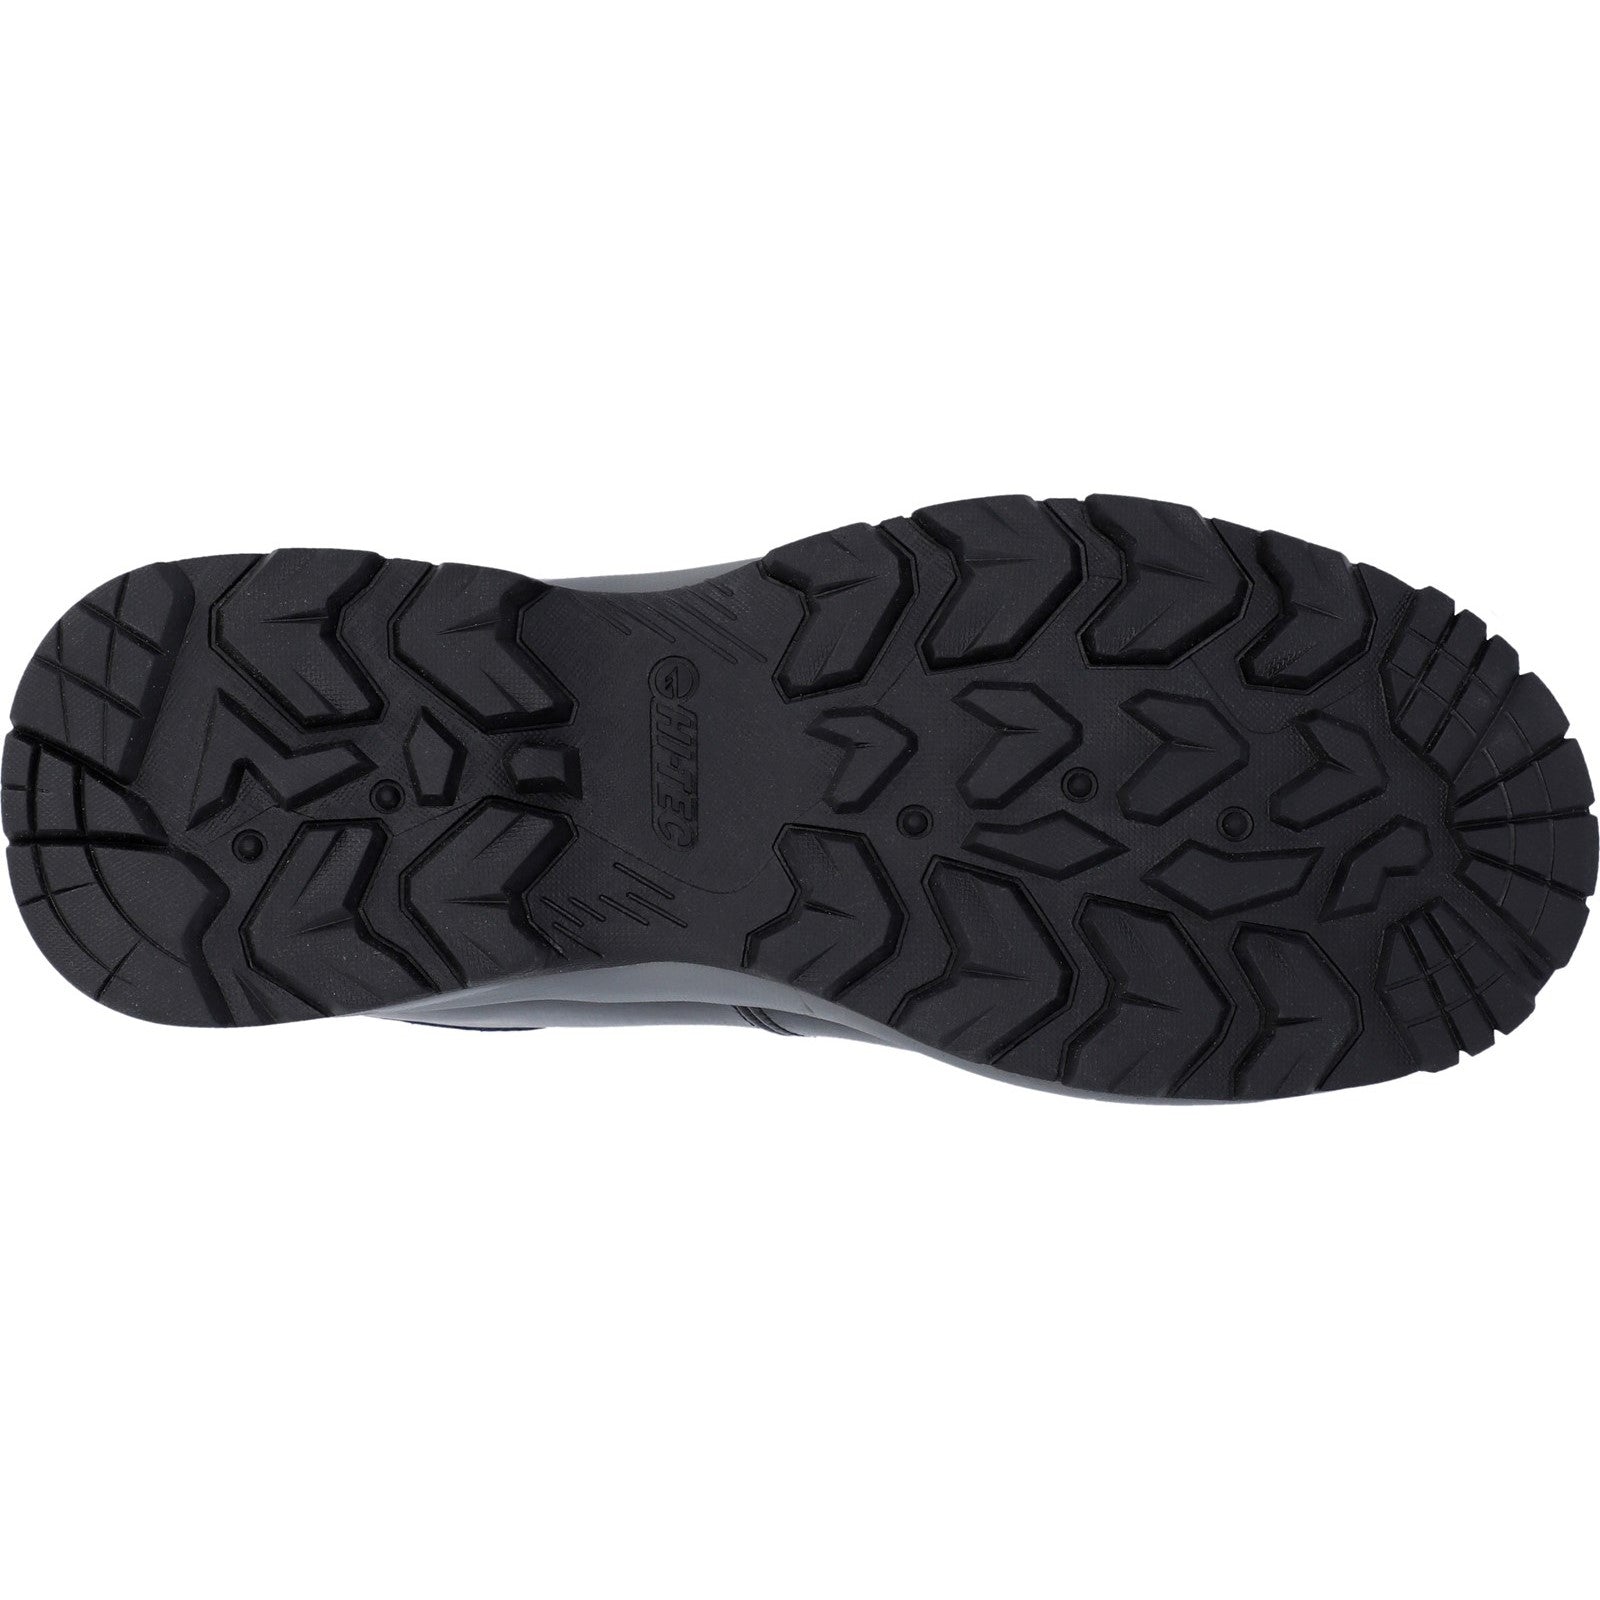 Hi-Tec Mens Eurotrek Lite Waterproof Leather Walking Boots - Black